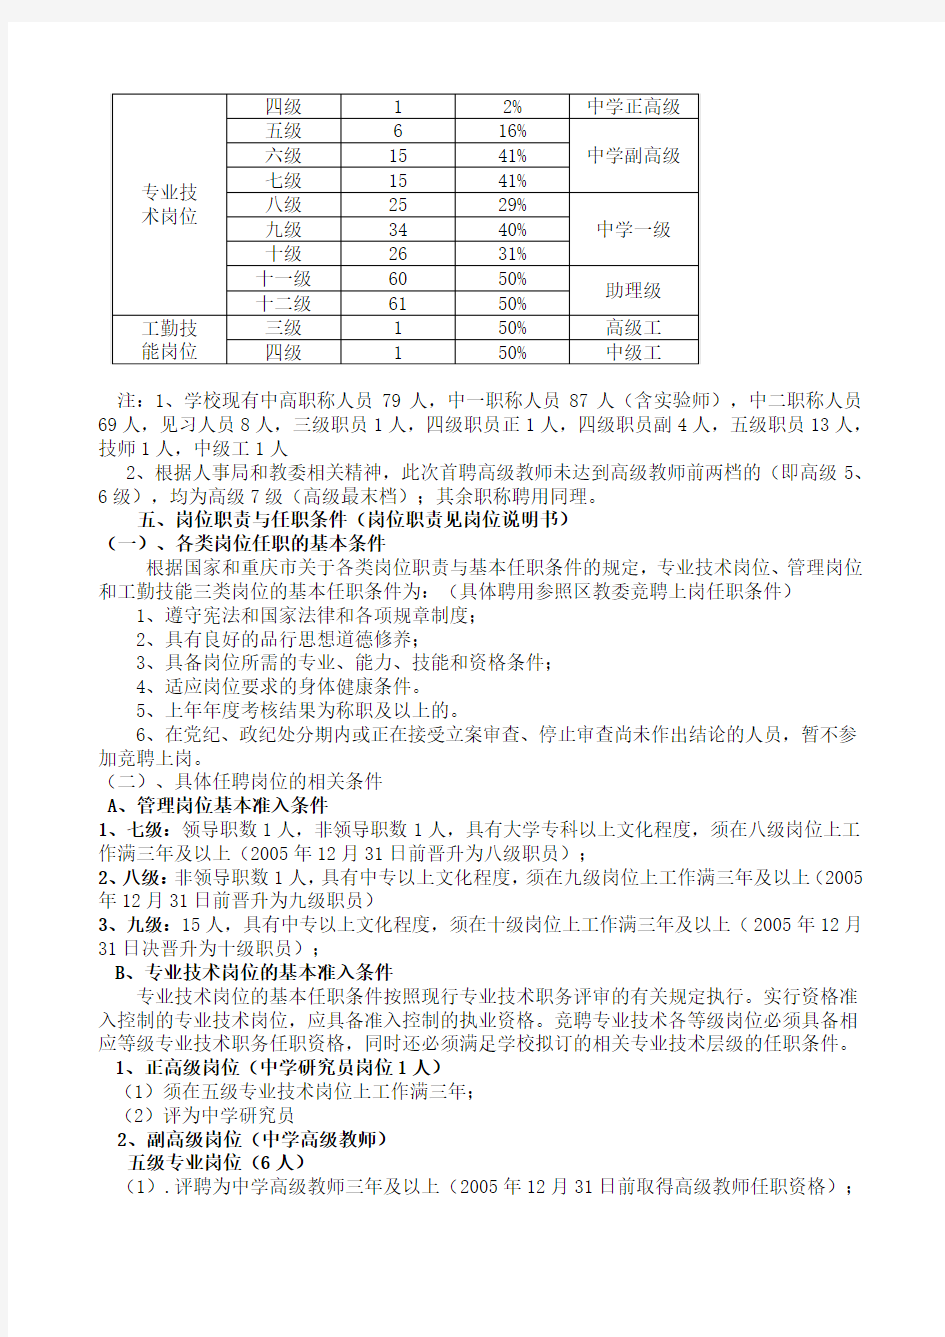 重庆第二外国语学校岗位设置及聘任实施方案